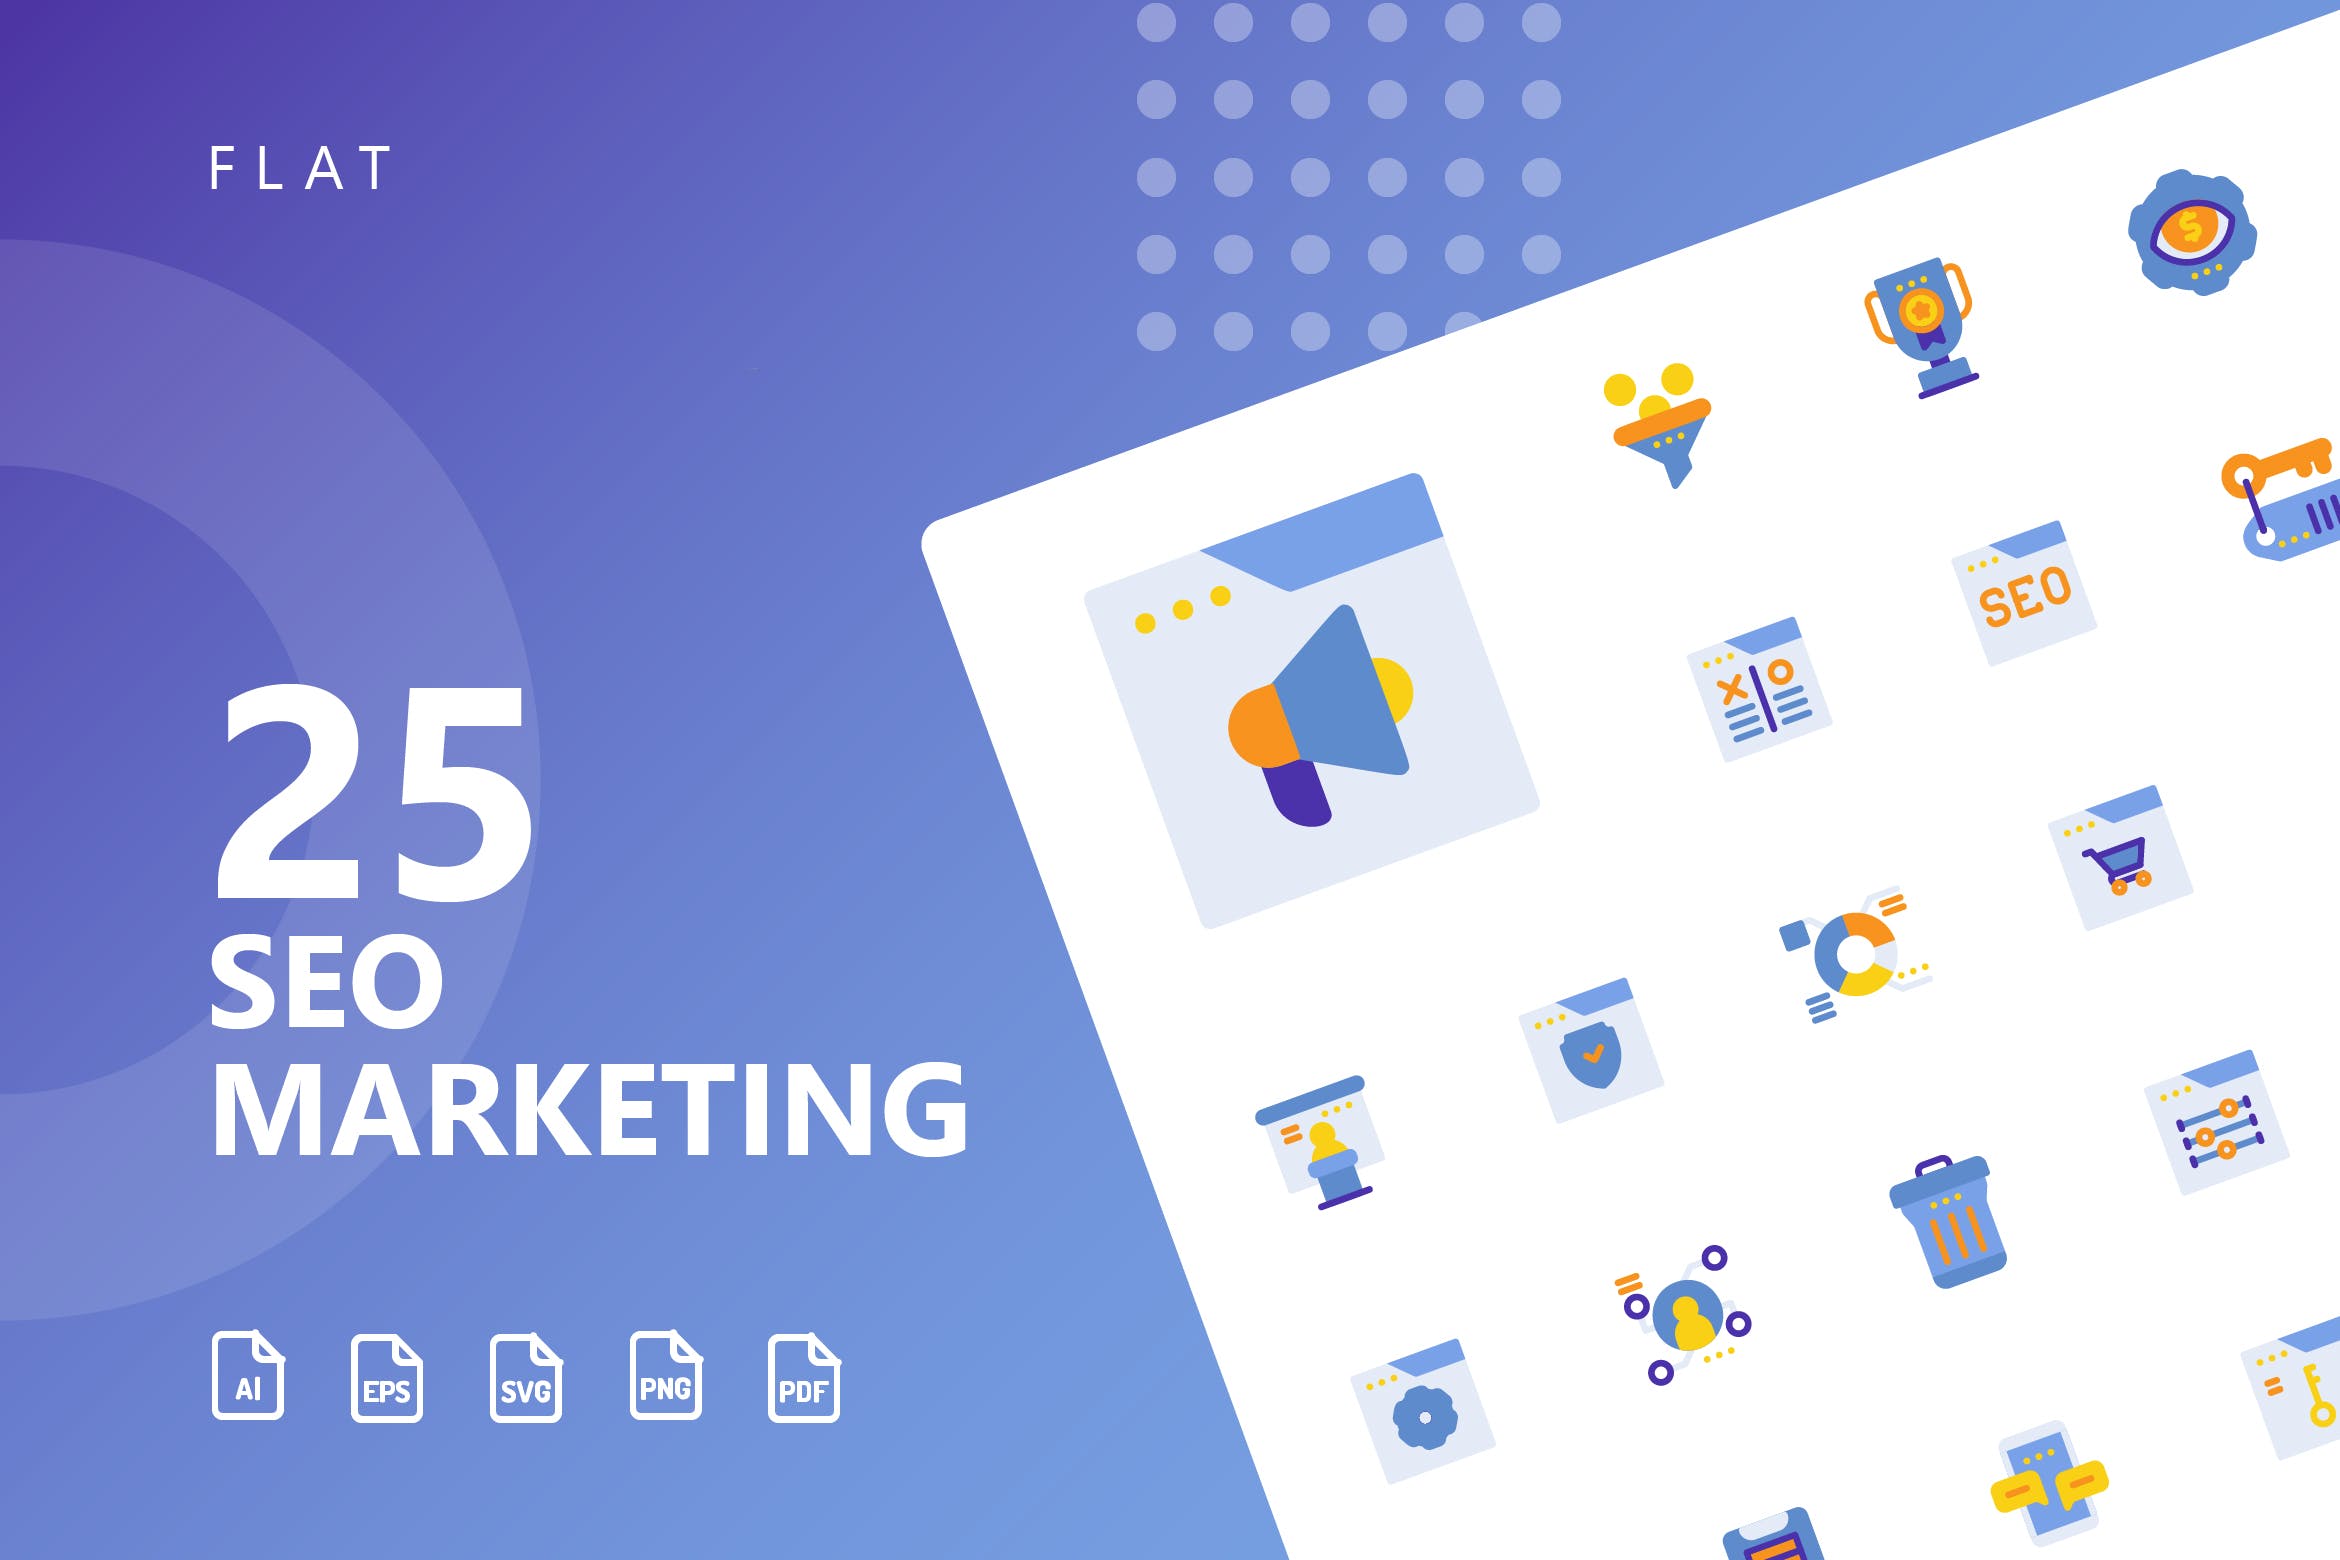 25枚SEO搜索引擎优化营销扁平化矢量素材库精选图标v2 SEO Marketing Flat Icons插图